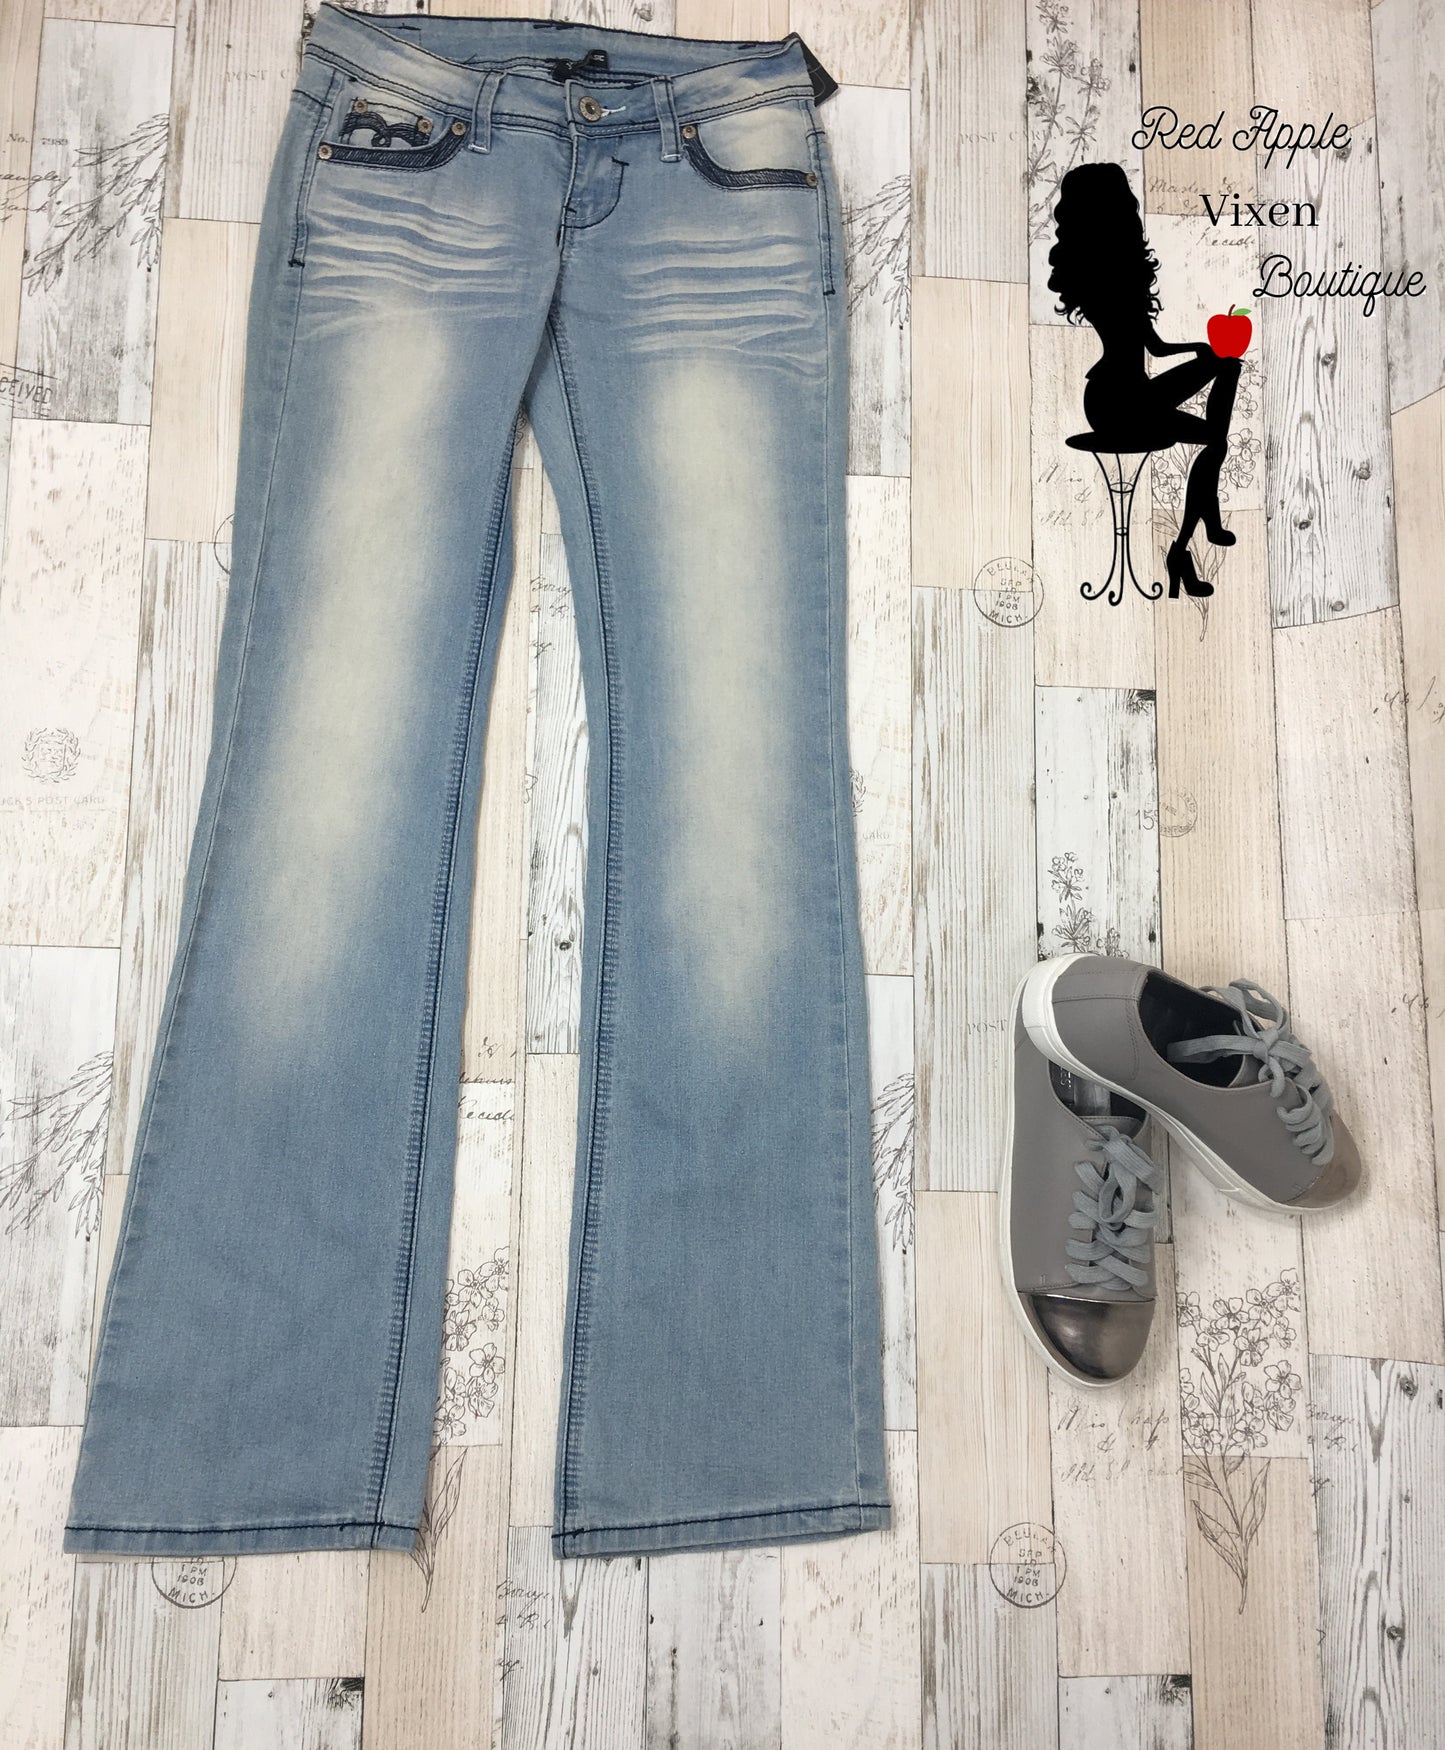 Stretch Denim Boot Cut Jeans - Red Apple Vixen Boutique